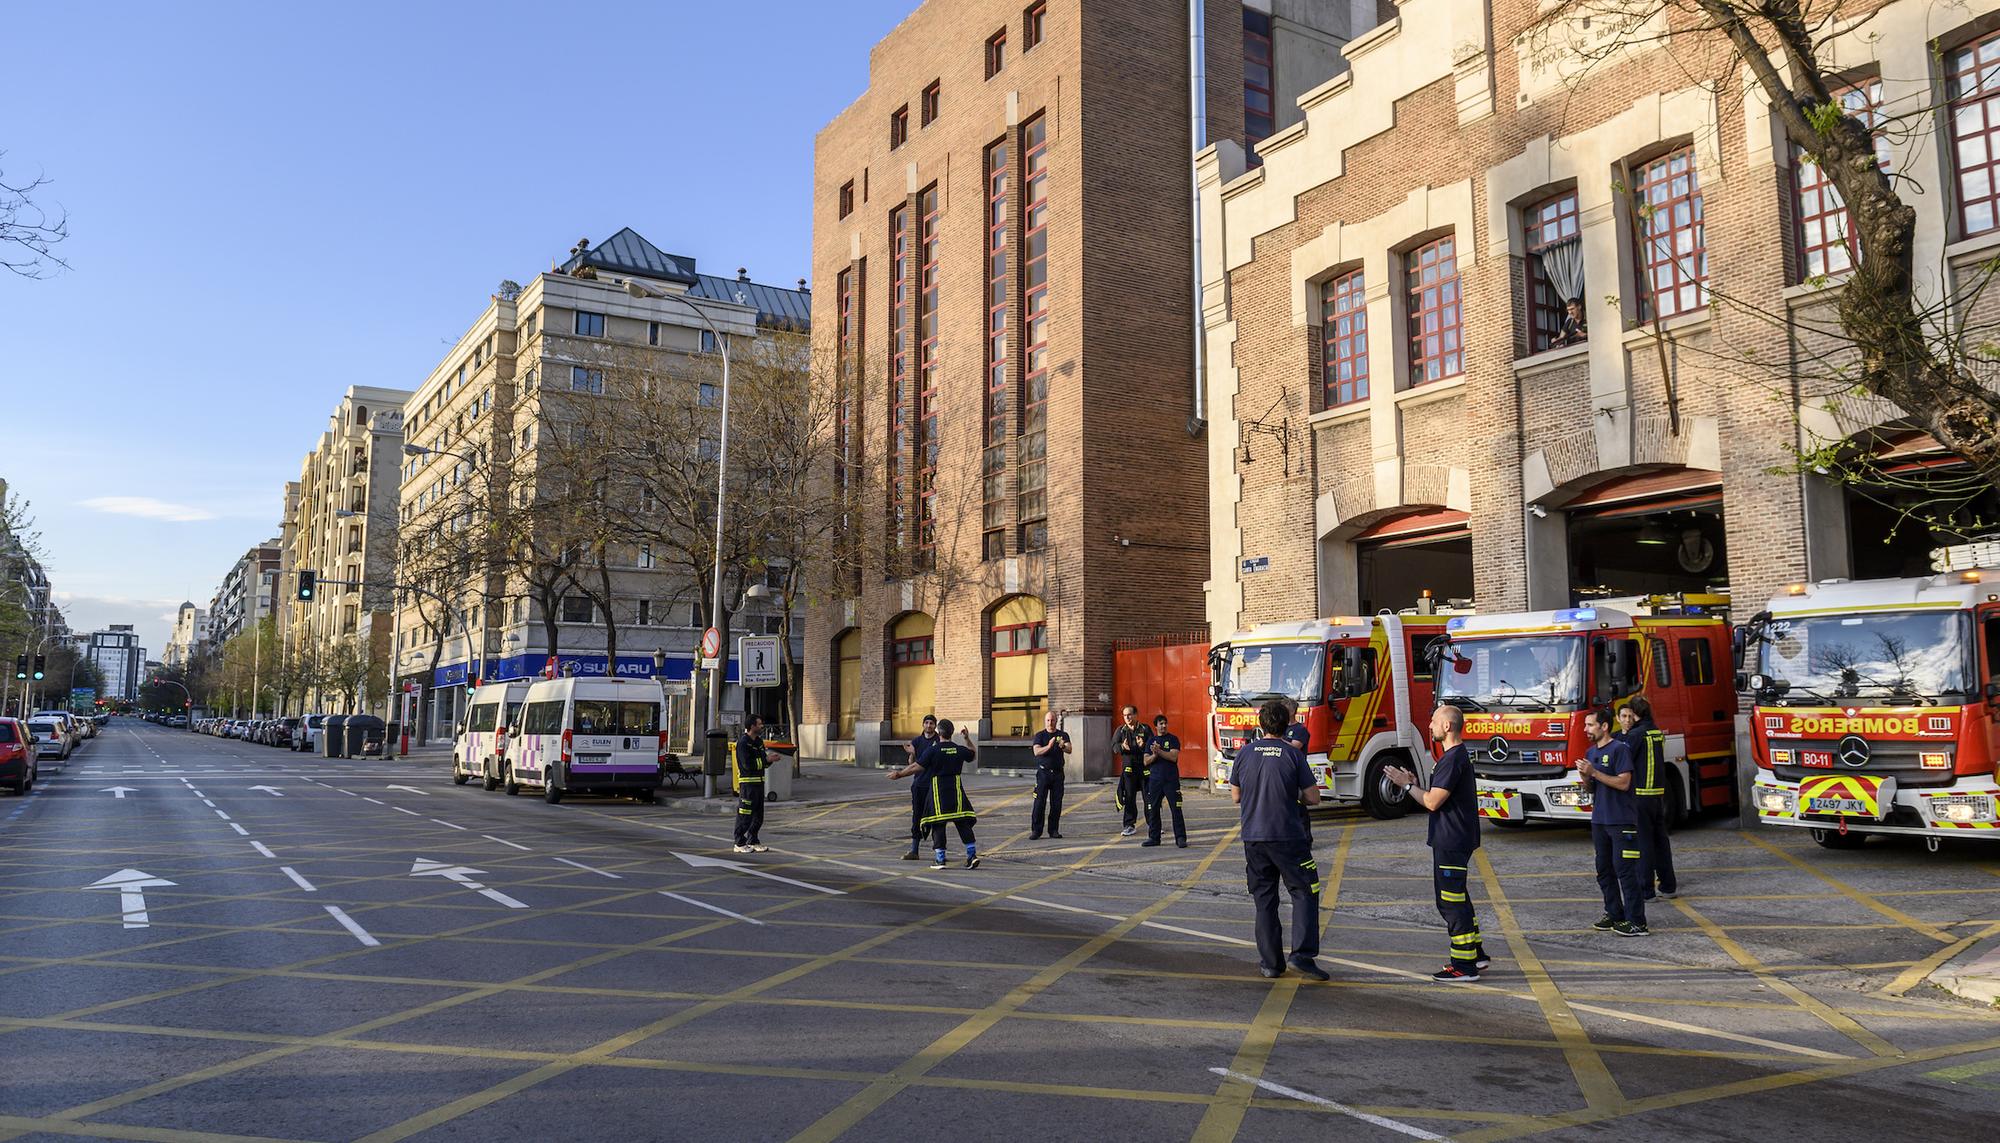 Parque de bomberos 1 en Madrid - 4